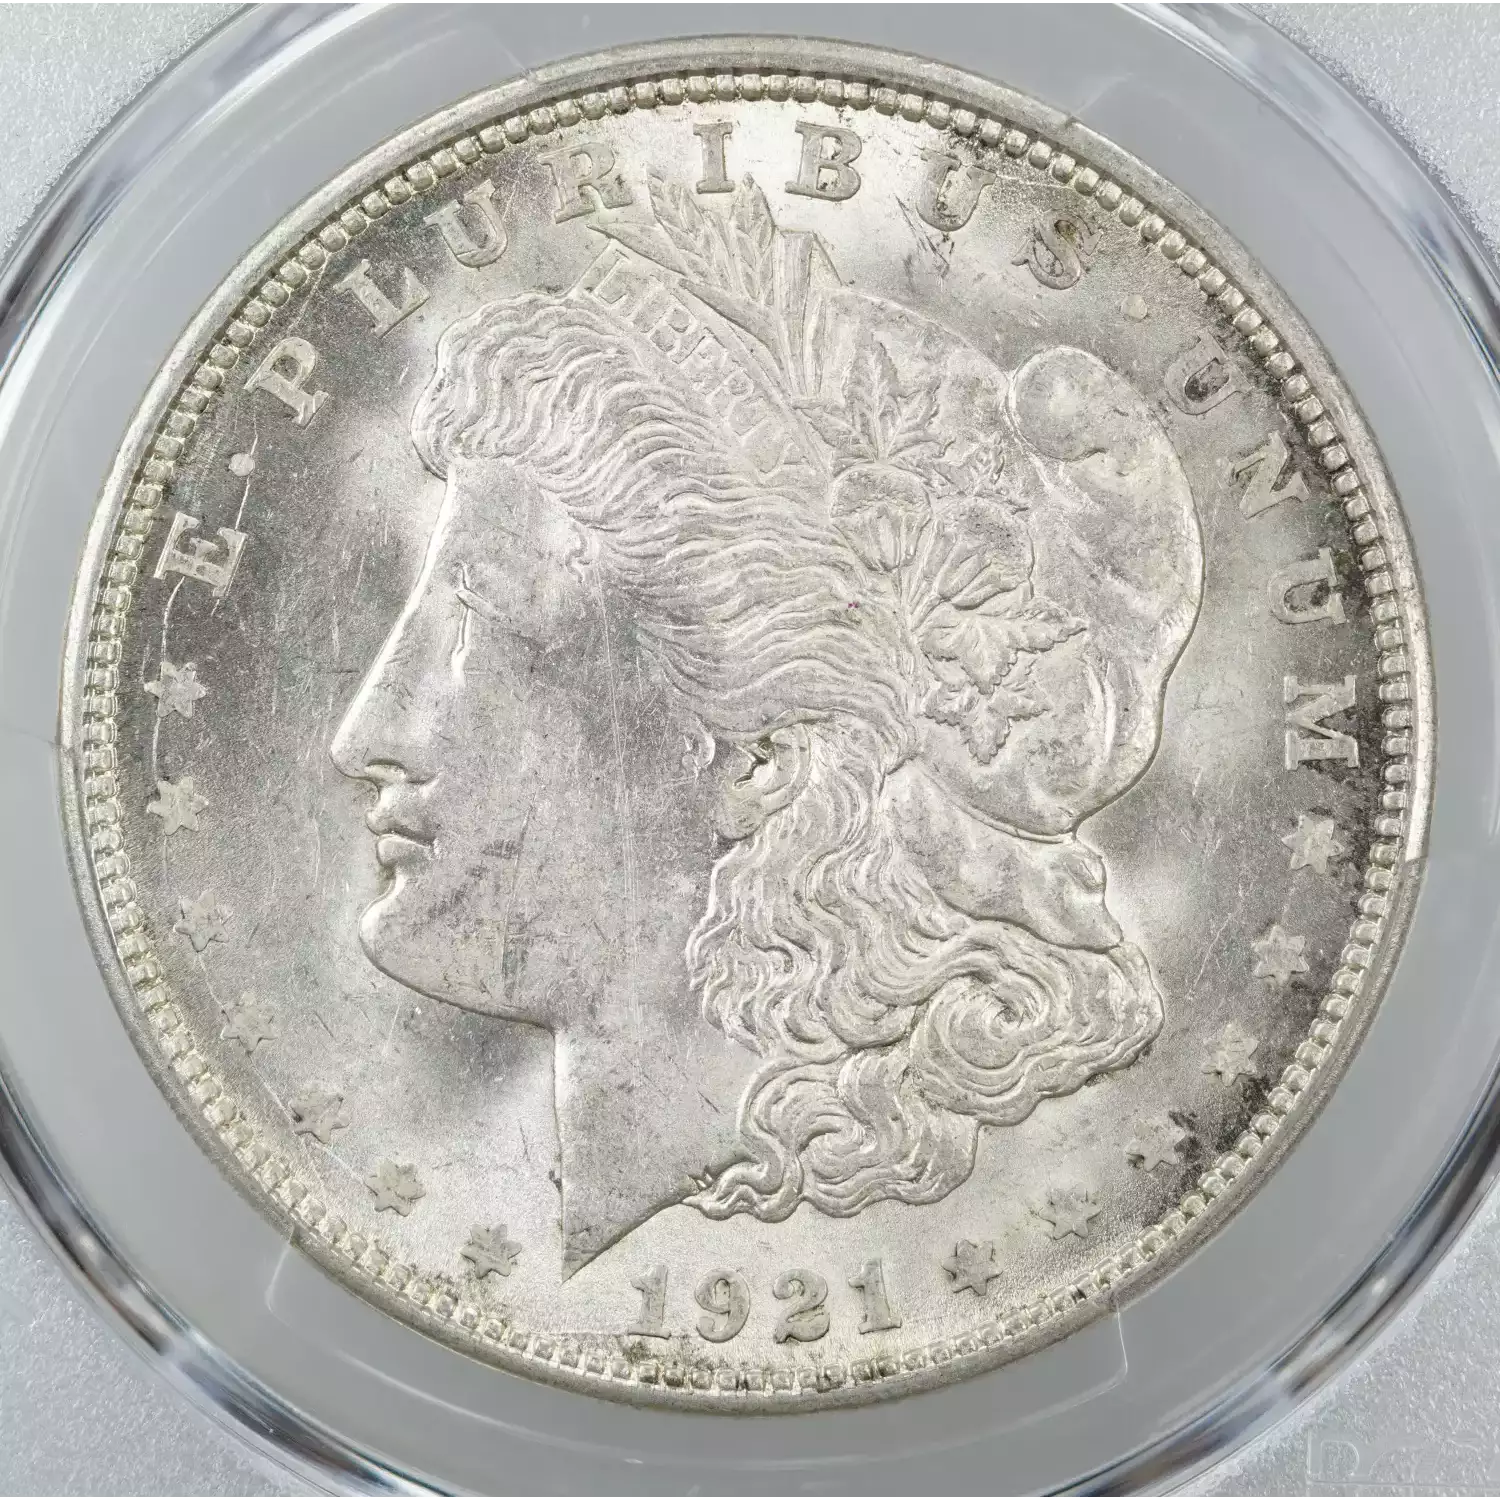 1921-D $1